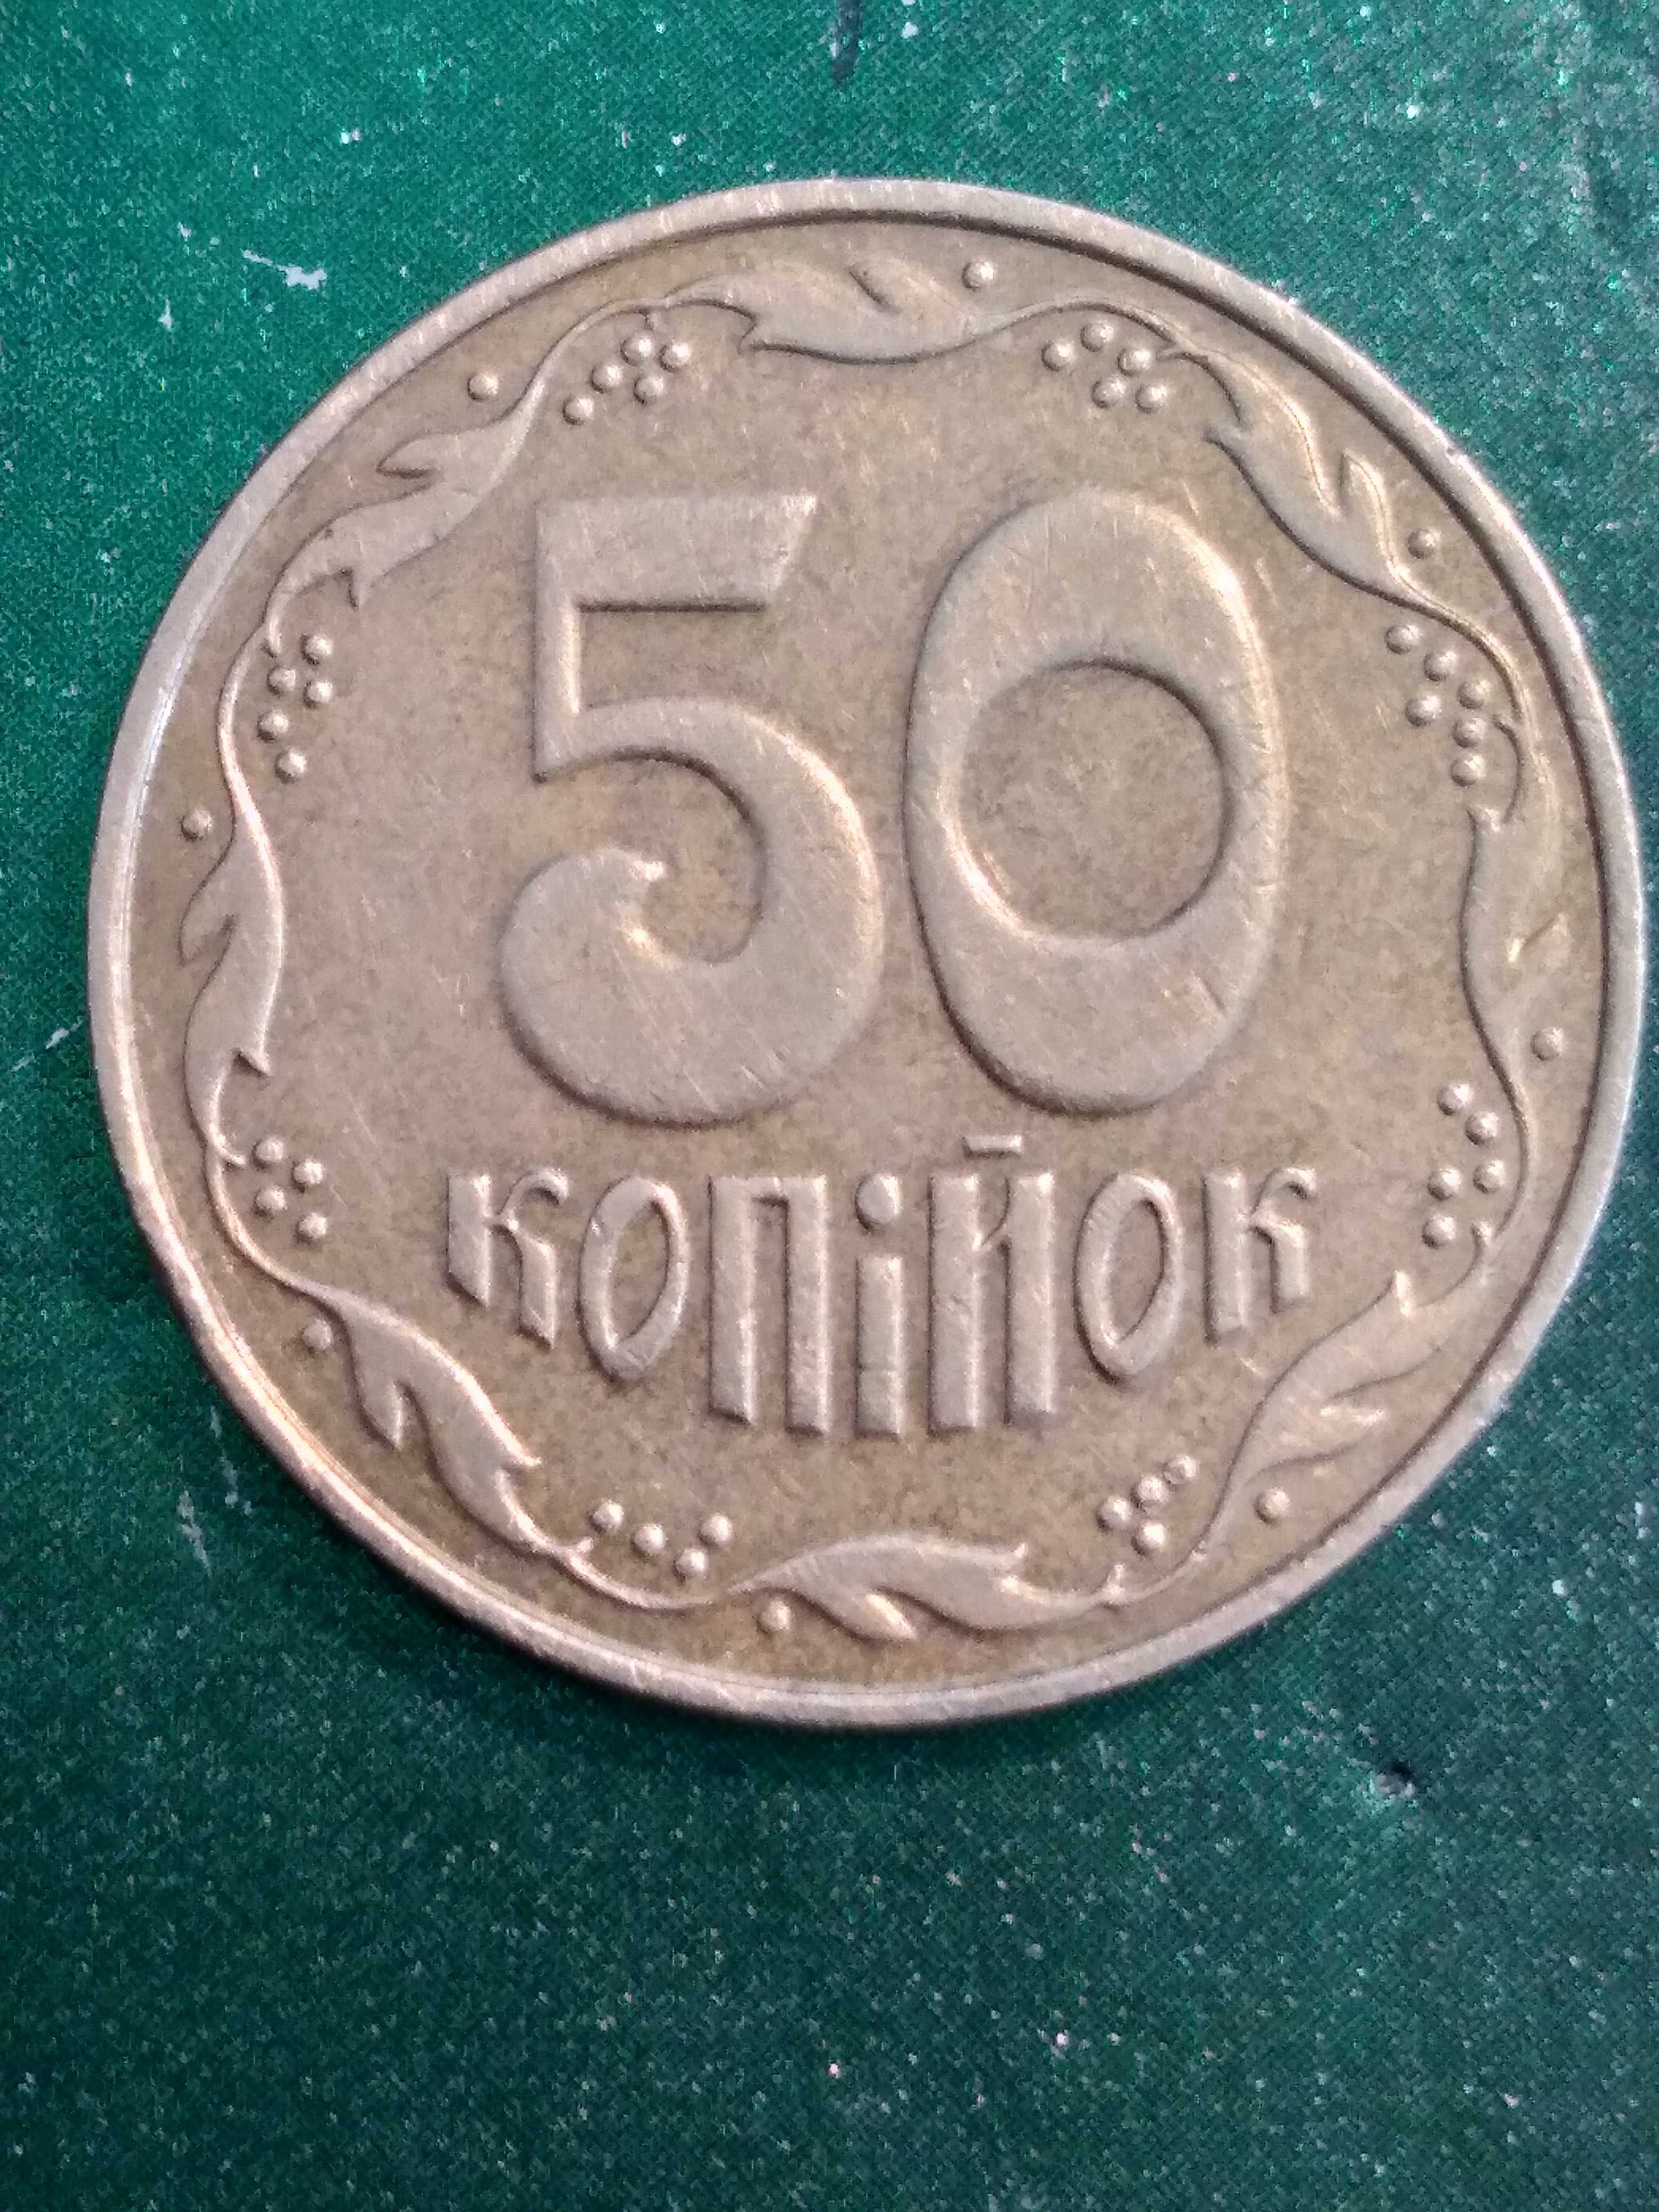 50 Копеек Украины 2001 года (Тираж 5000 экземпляр)